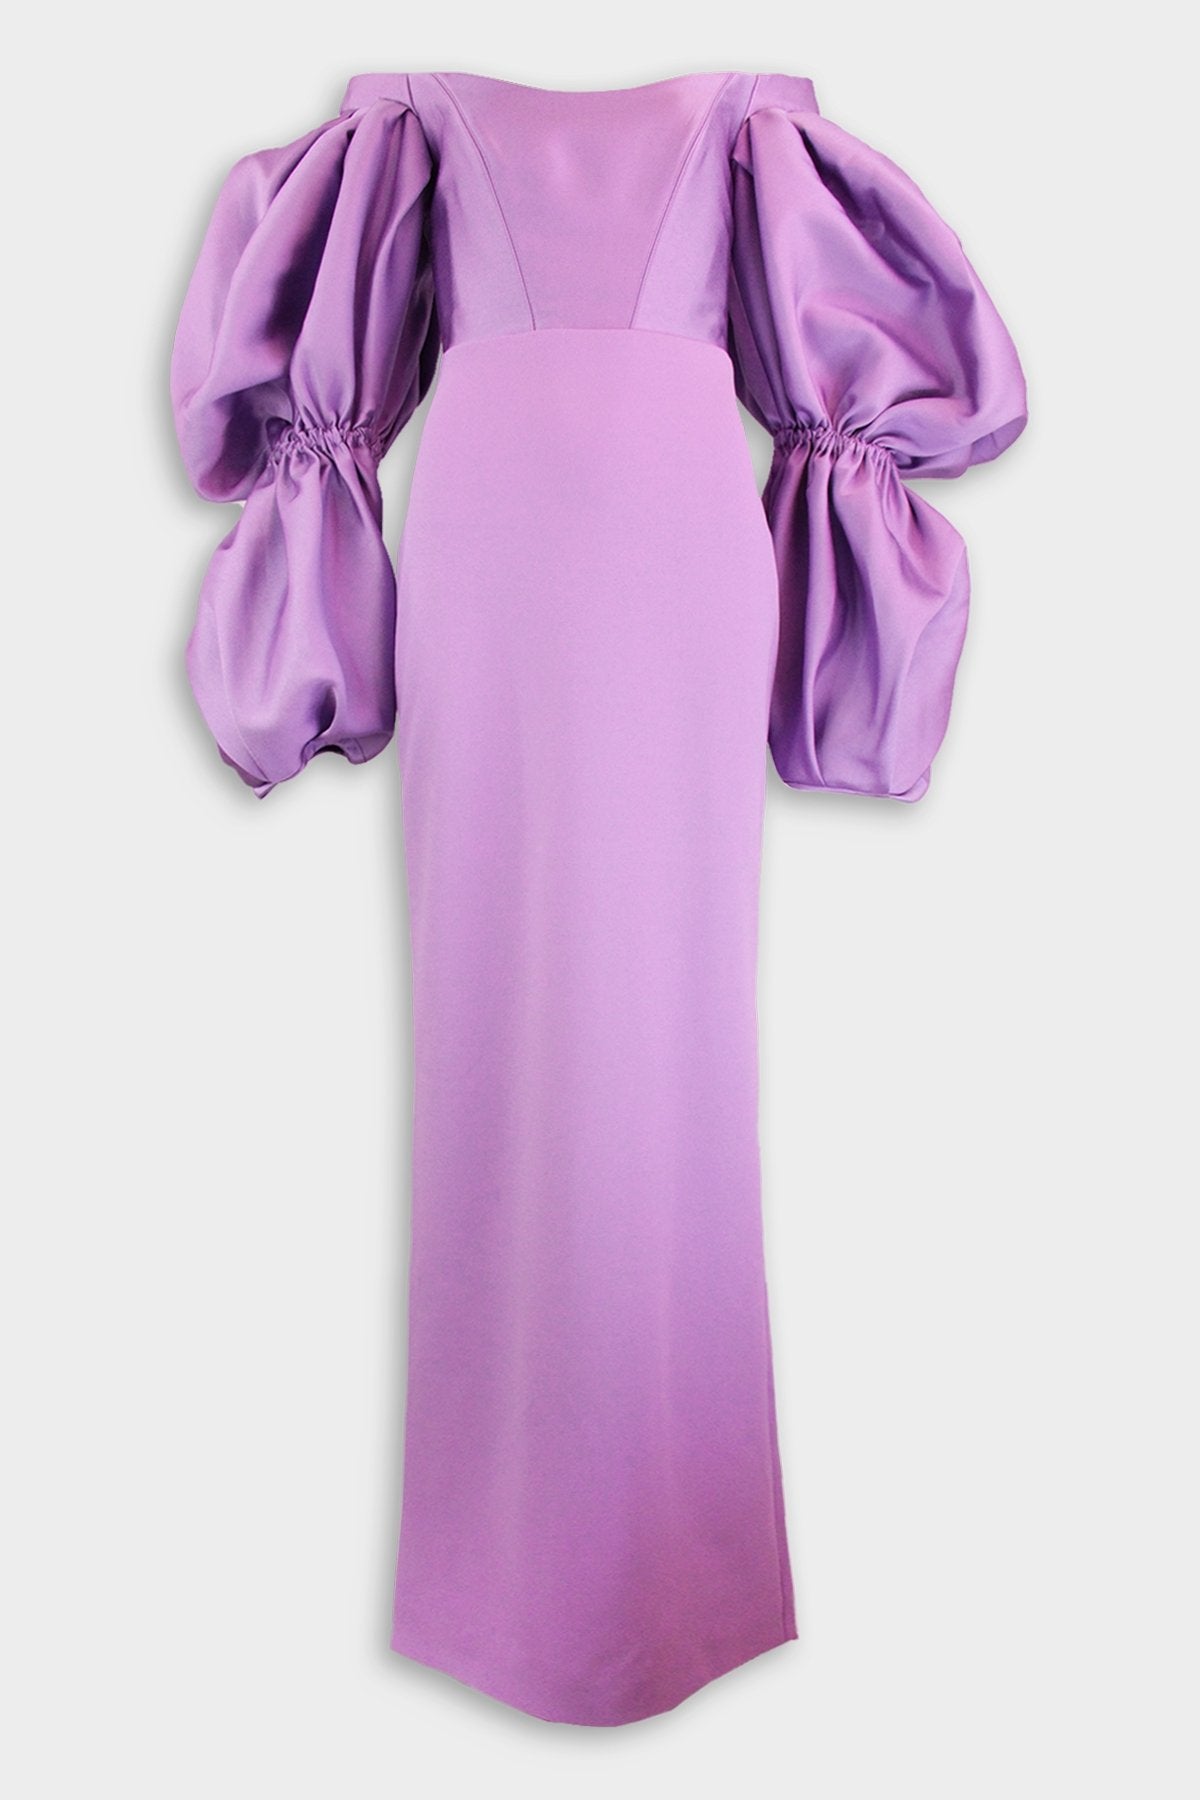 Hedera Maxi Dress in Dark Lilac - shop-olivia.com